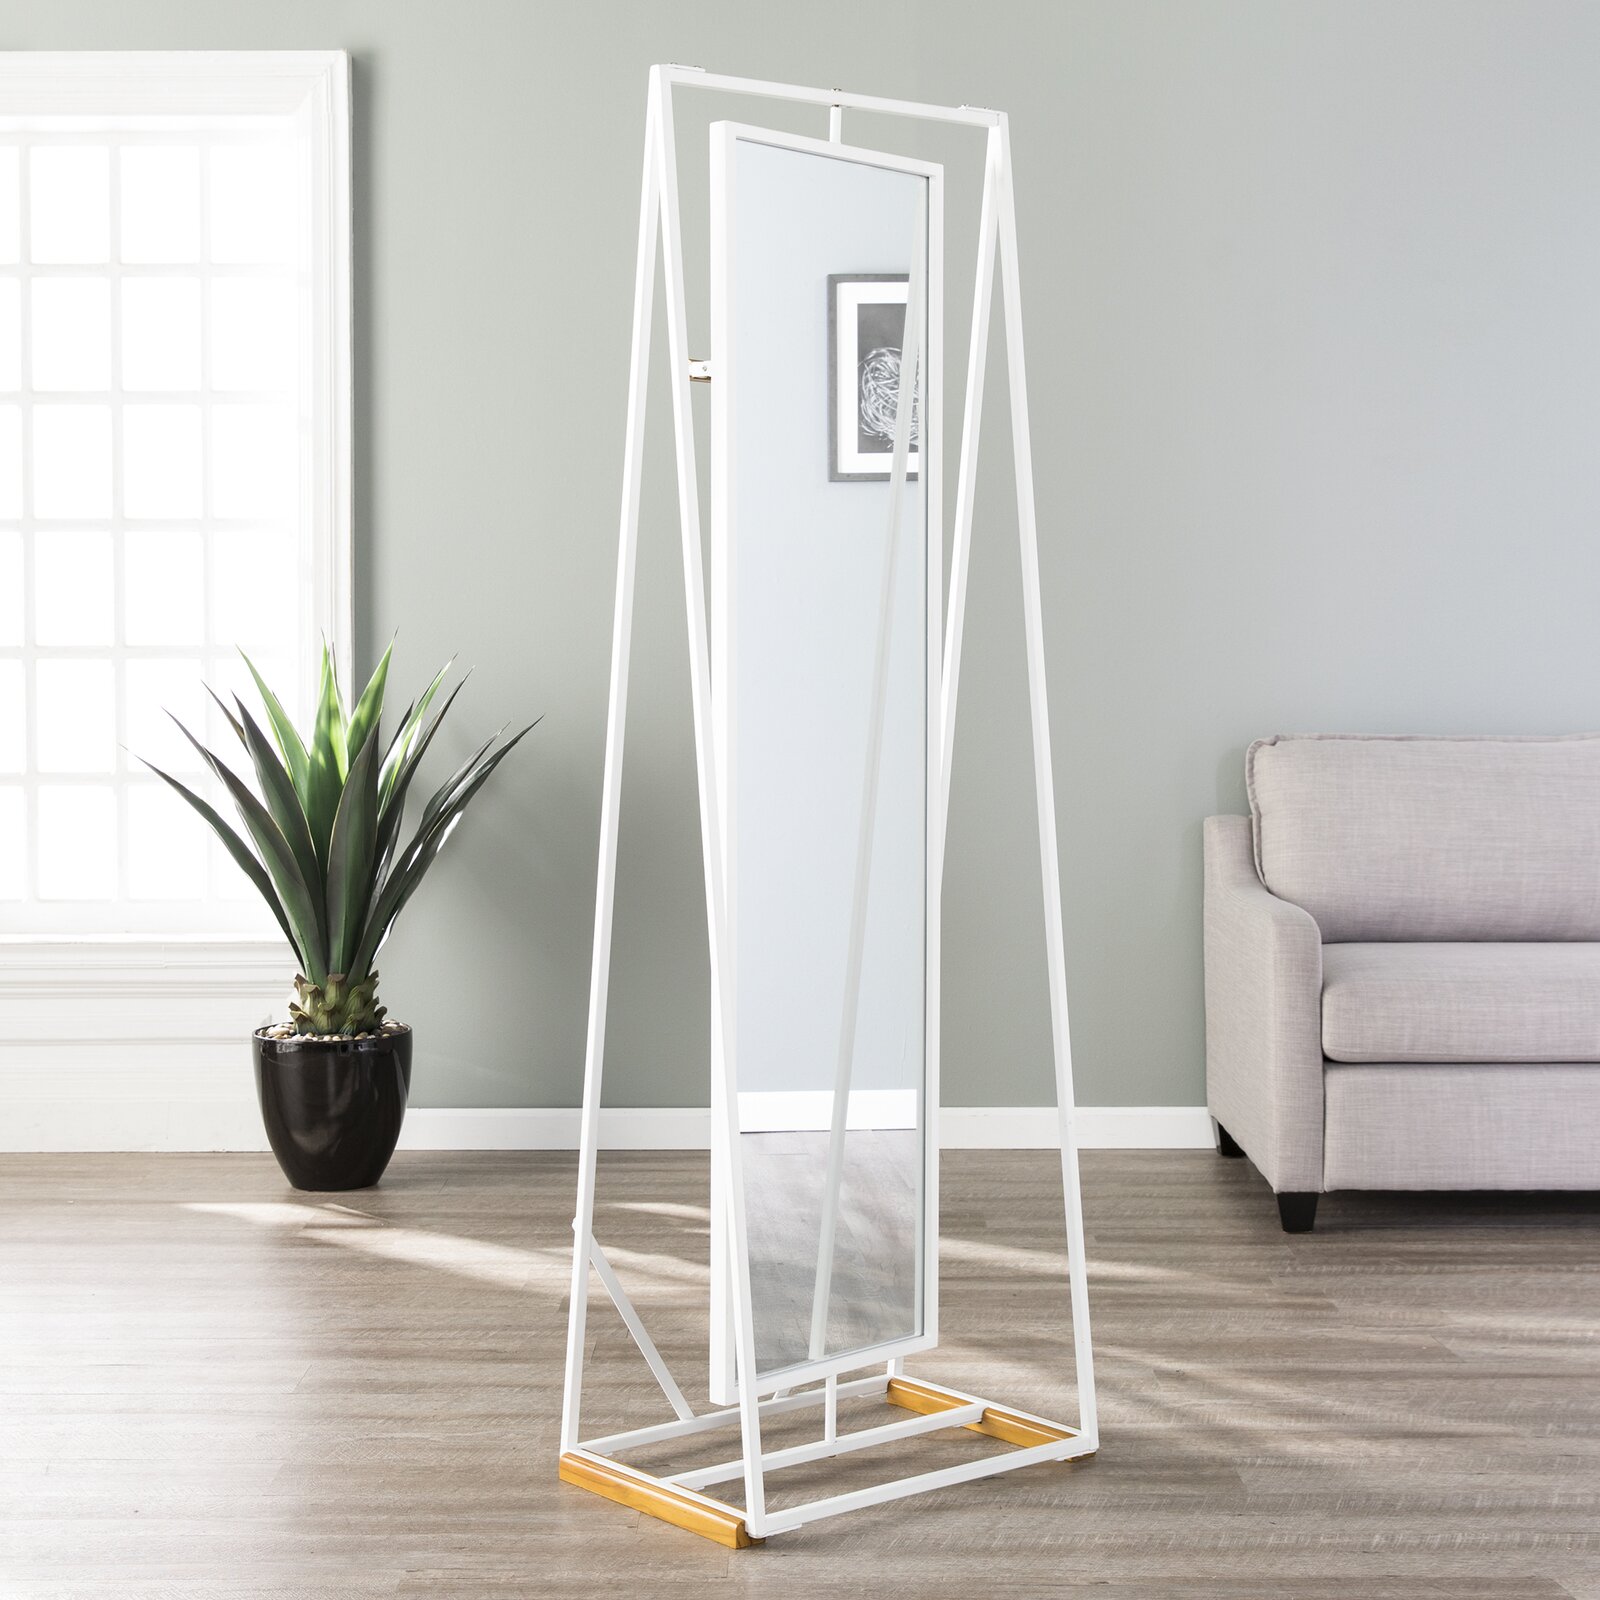 51 Full Length Mirrors To Flatter Your, White Framed Mirror For Living Room